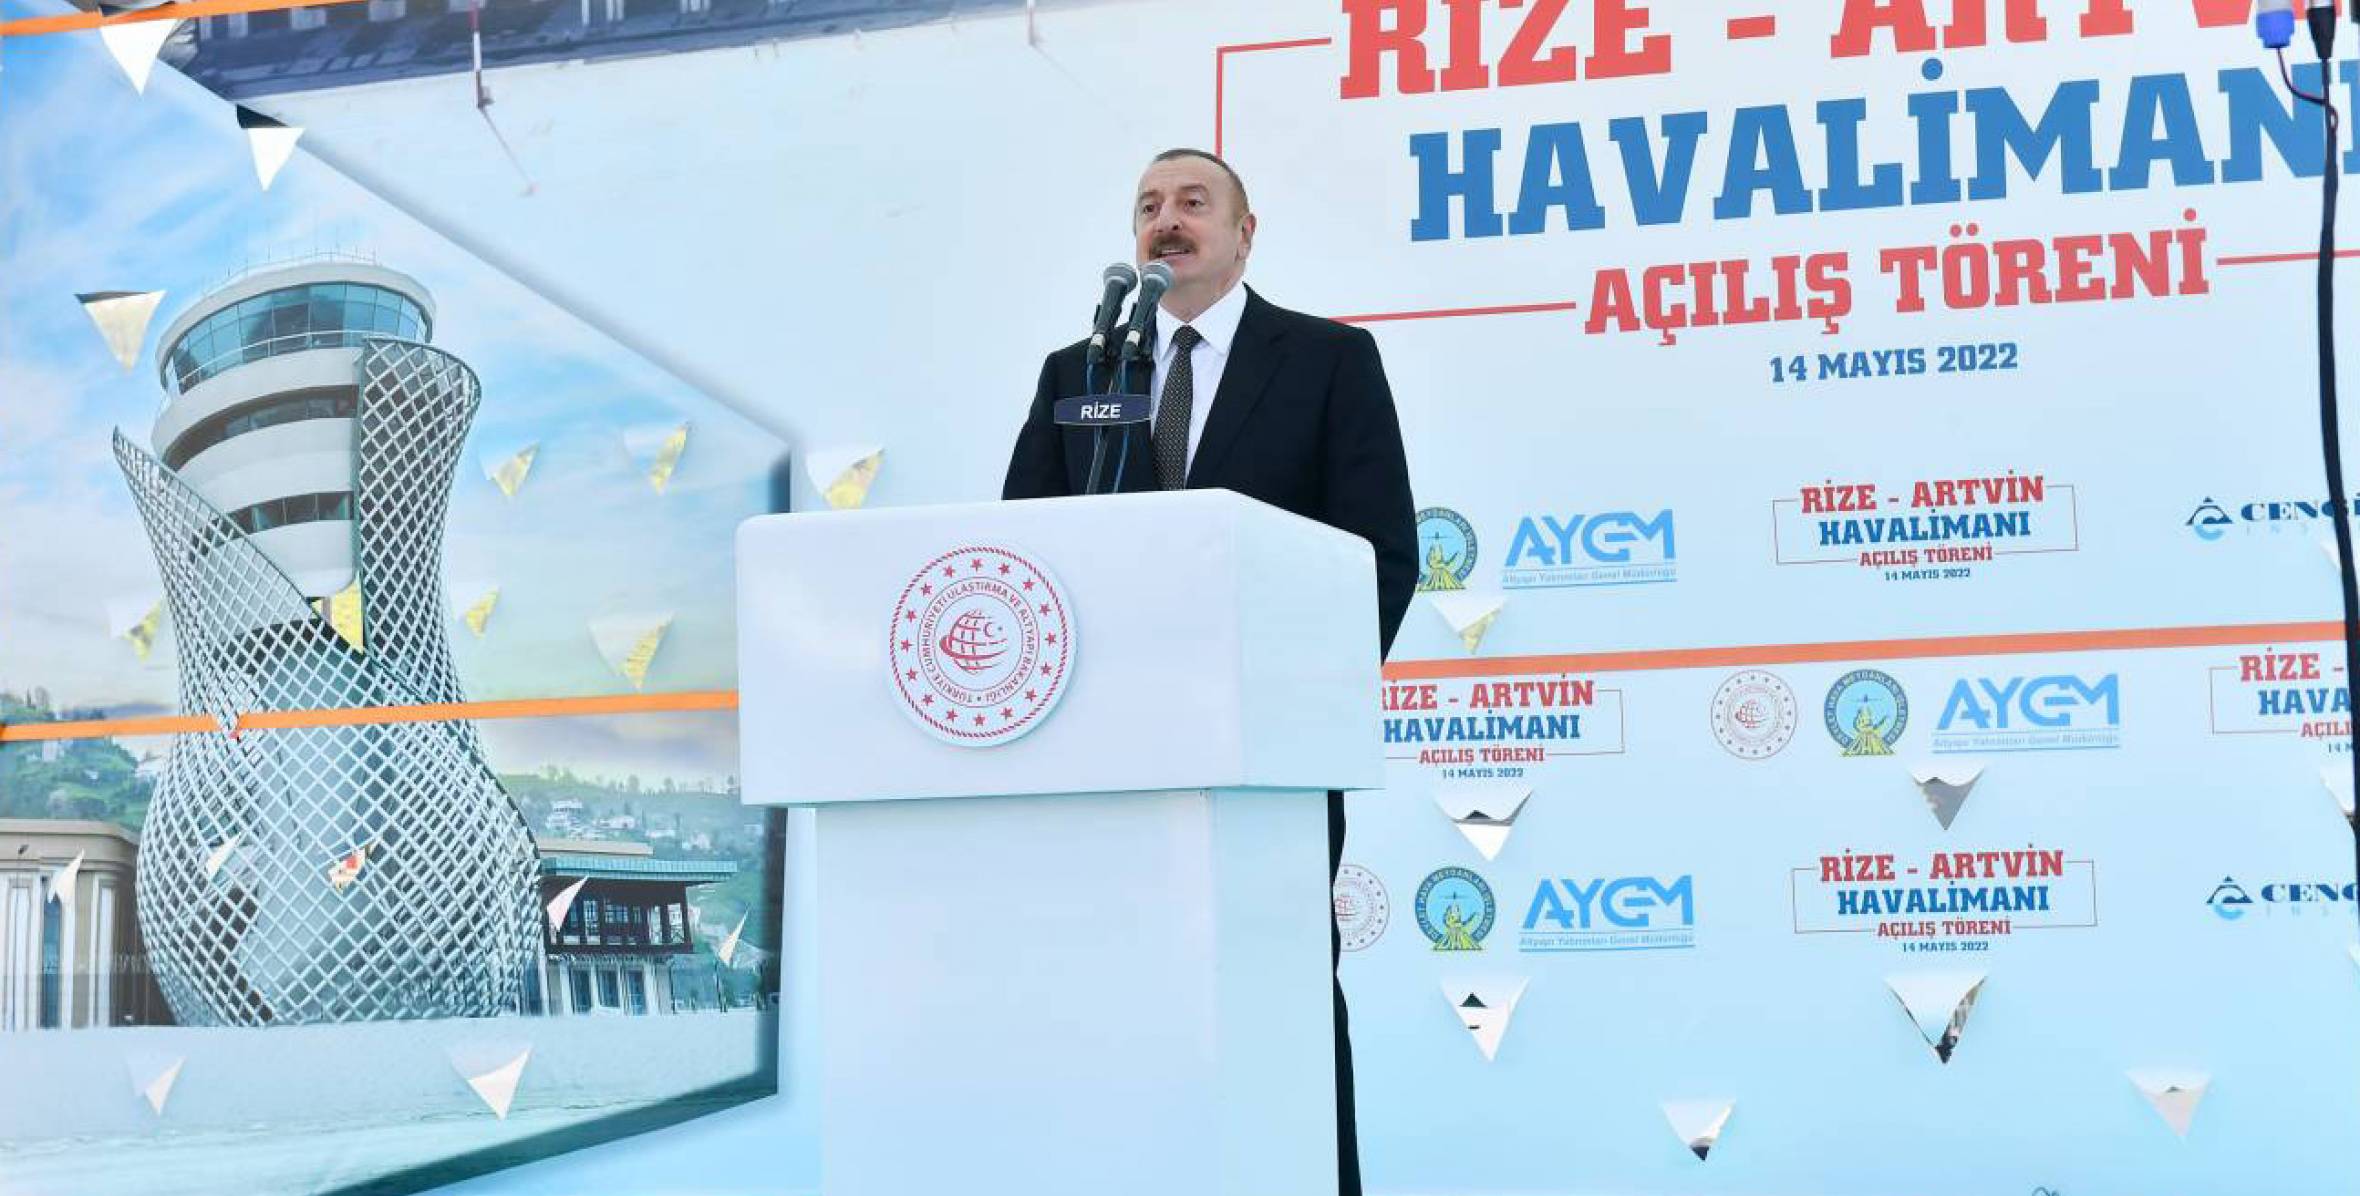 Rize-Artvin Hava Limanının açılış mərasimində  İlham Əliyevin nitqi